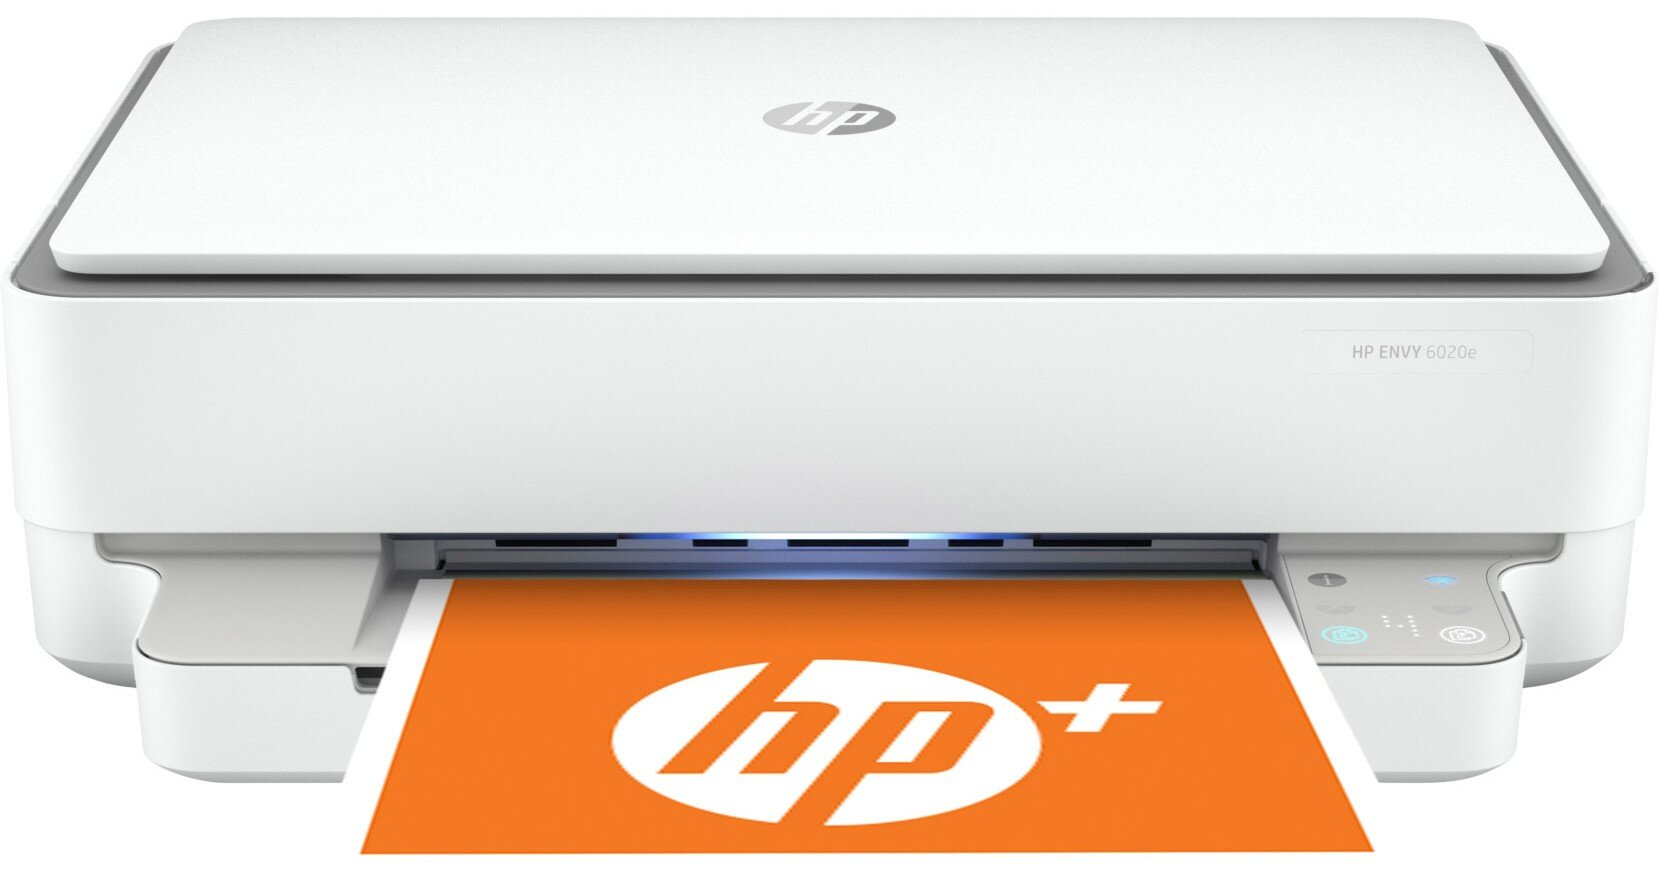 HP ENVY 6020e Duplex Wi-Fi Instant Ink HP+ Urządzenie wielofunkcyjne -  niskie ceny i opinie w Media Expert